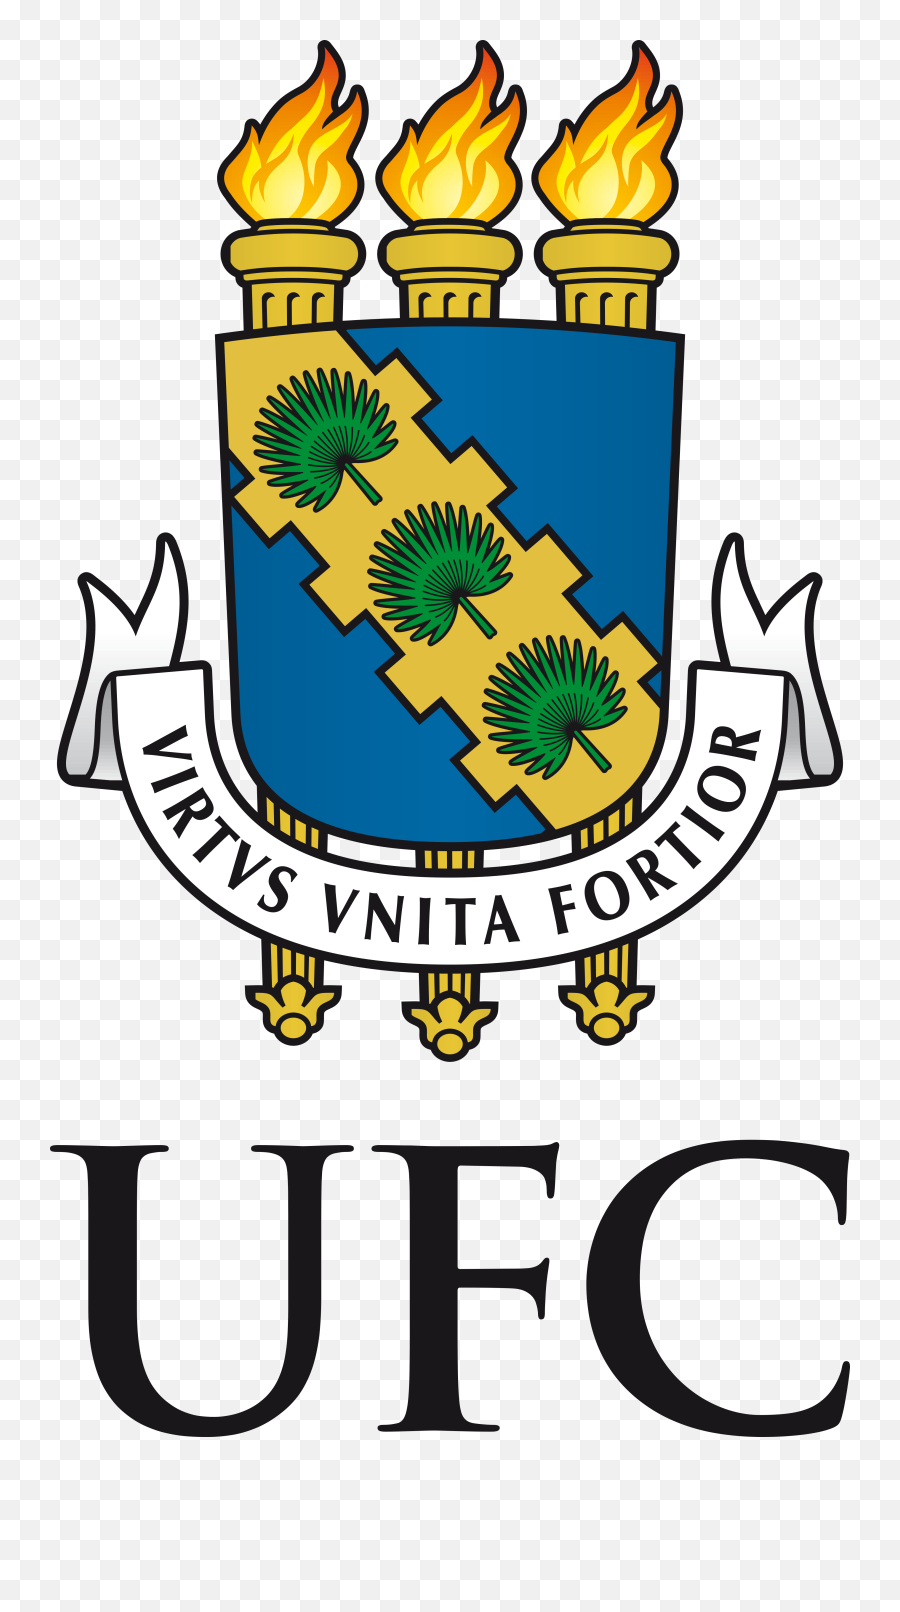 Logo Ufc Universidade Png 4 Image - Federal University Of Ceará,Ufc Logo Png